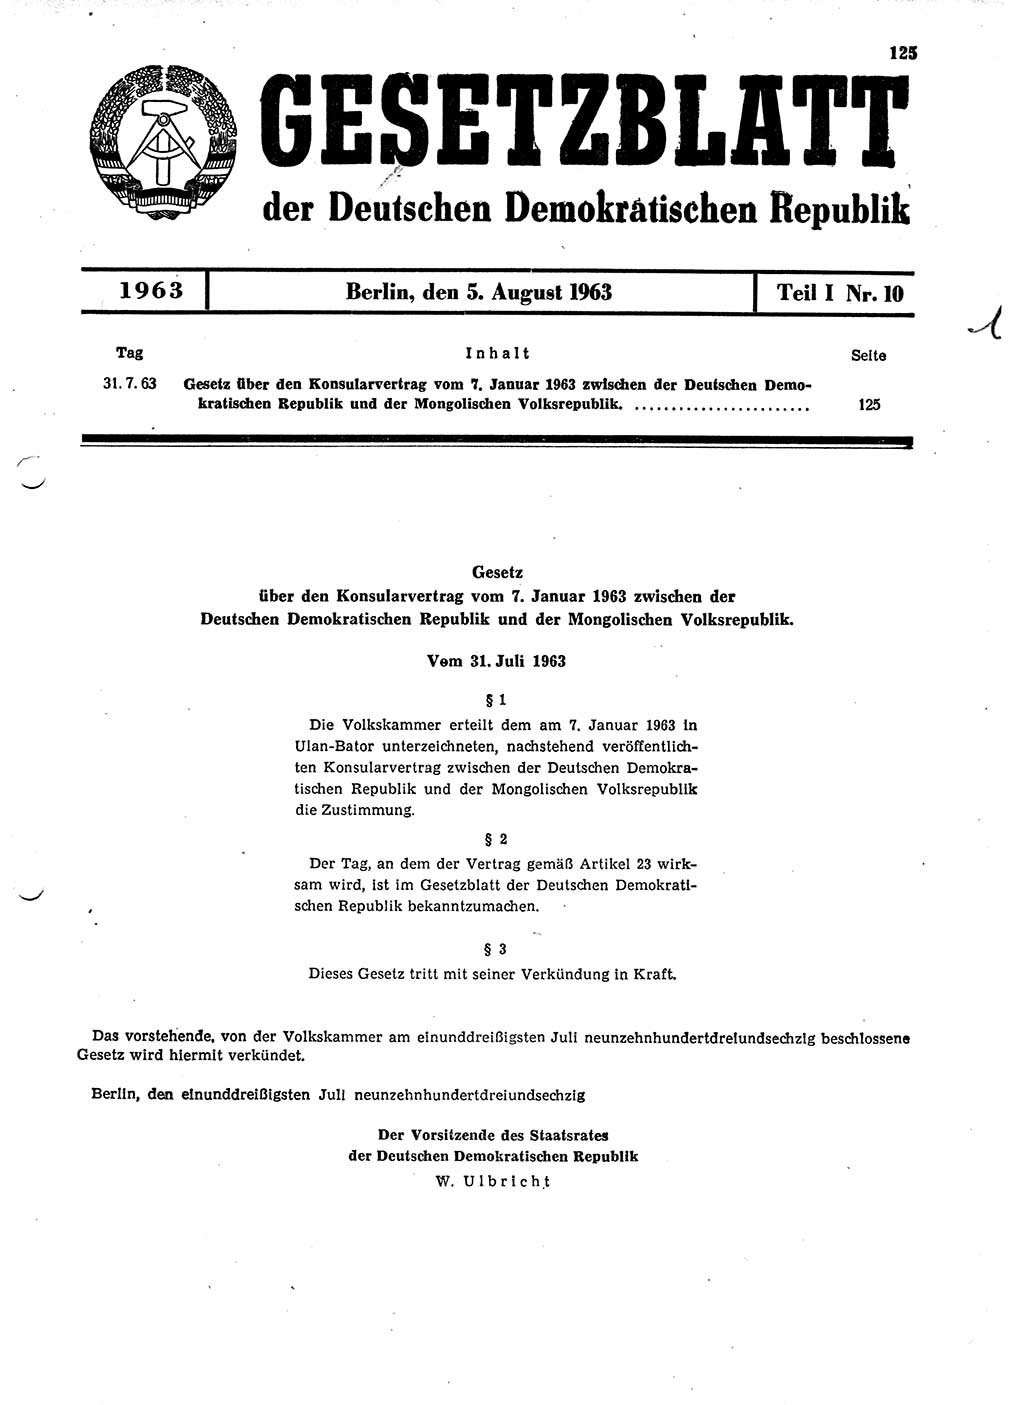 Gesetzblatt (GBl.) der Deutschen Demokratischen Republik (DDR) Teil Ⅰ 1963, Seite 125 (GBl. DDR Ⅰ 1963, S. 125)